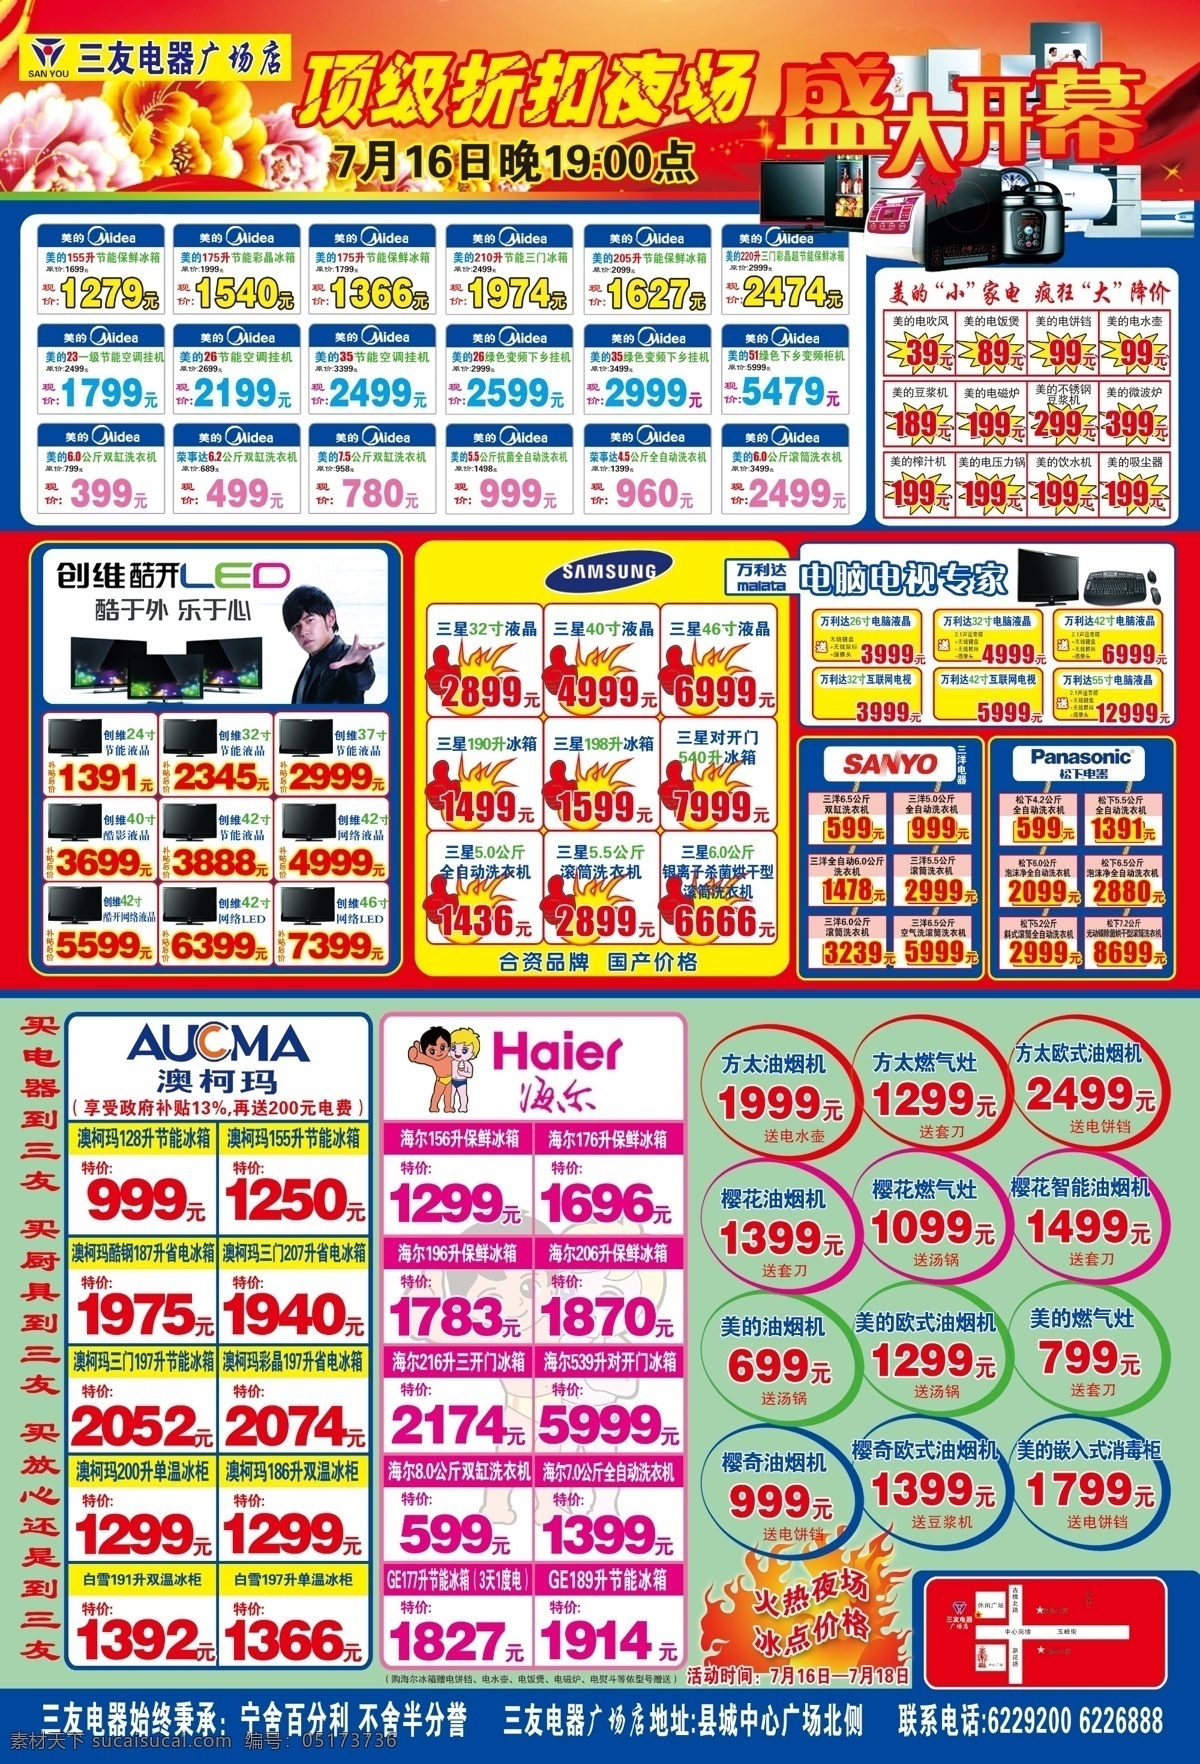 电器 超市 dm 电脑 广告设计模板 国内广告设计 宣传单 源文件 电器超市 周杰伦 psd源文件